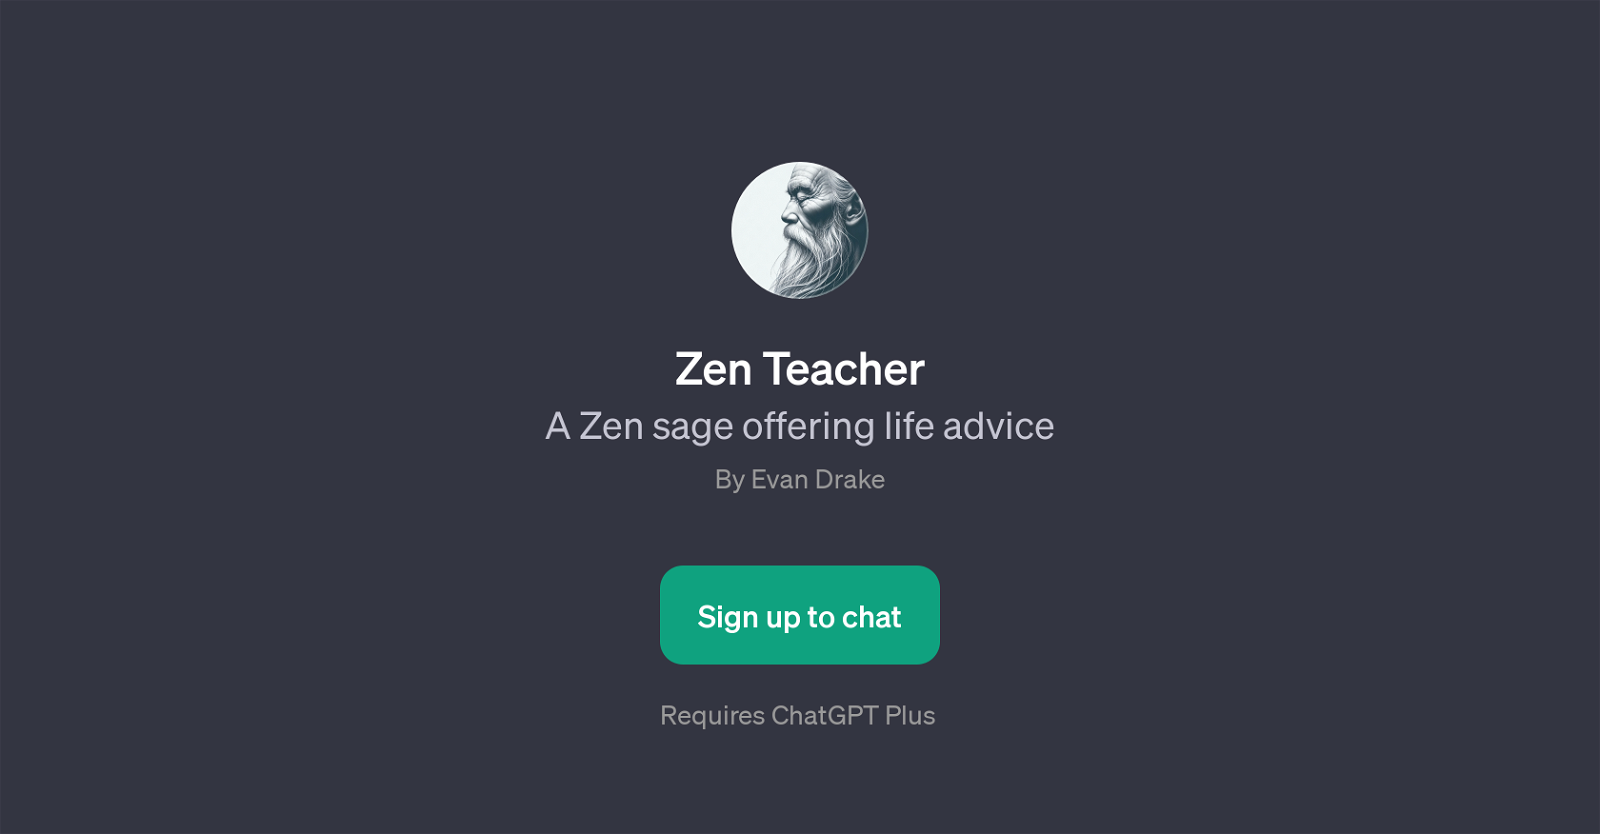 Zen Teacher website